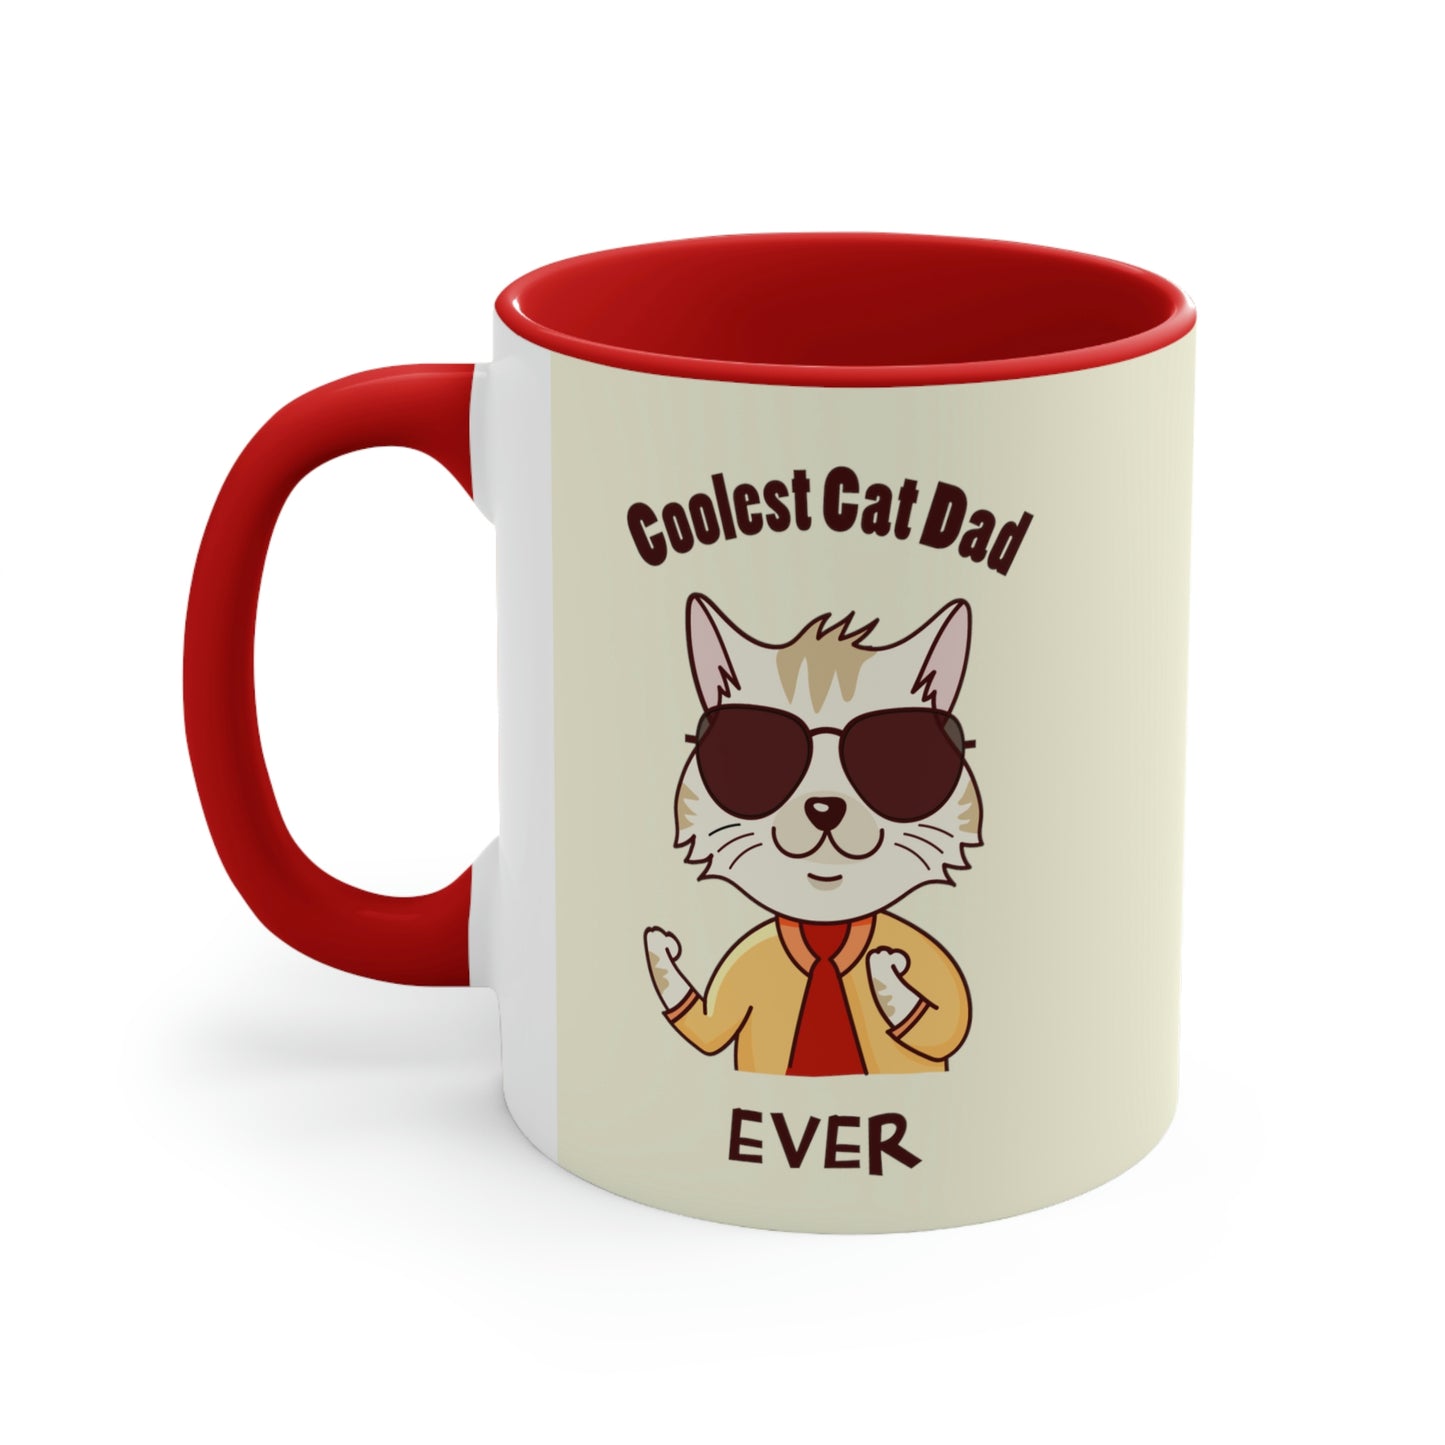 Coolest Cat Dad Accent Mug